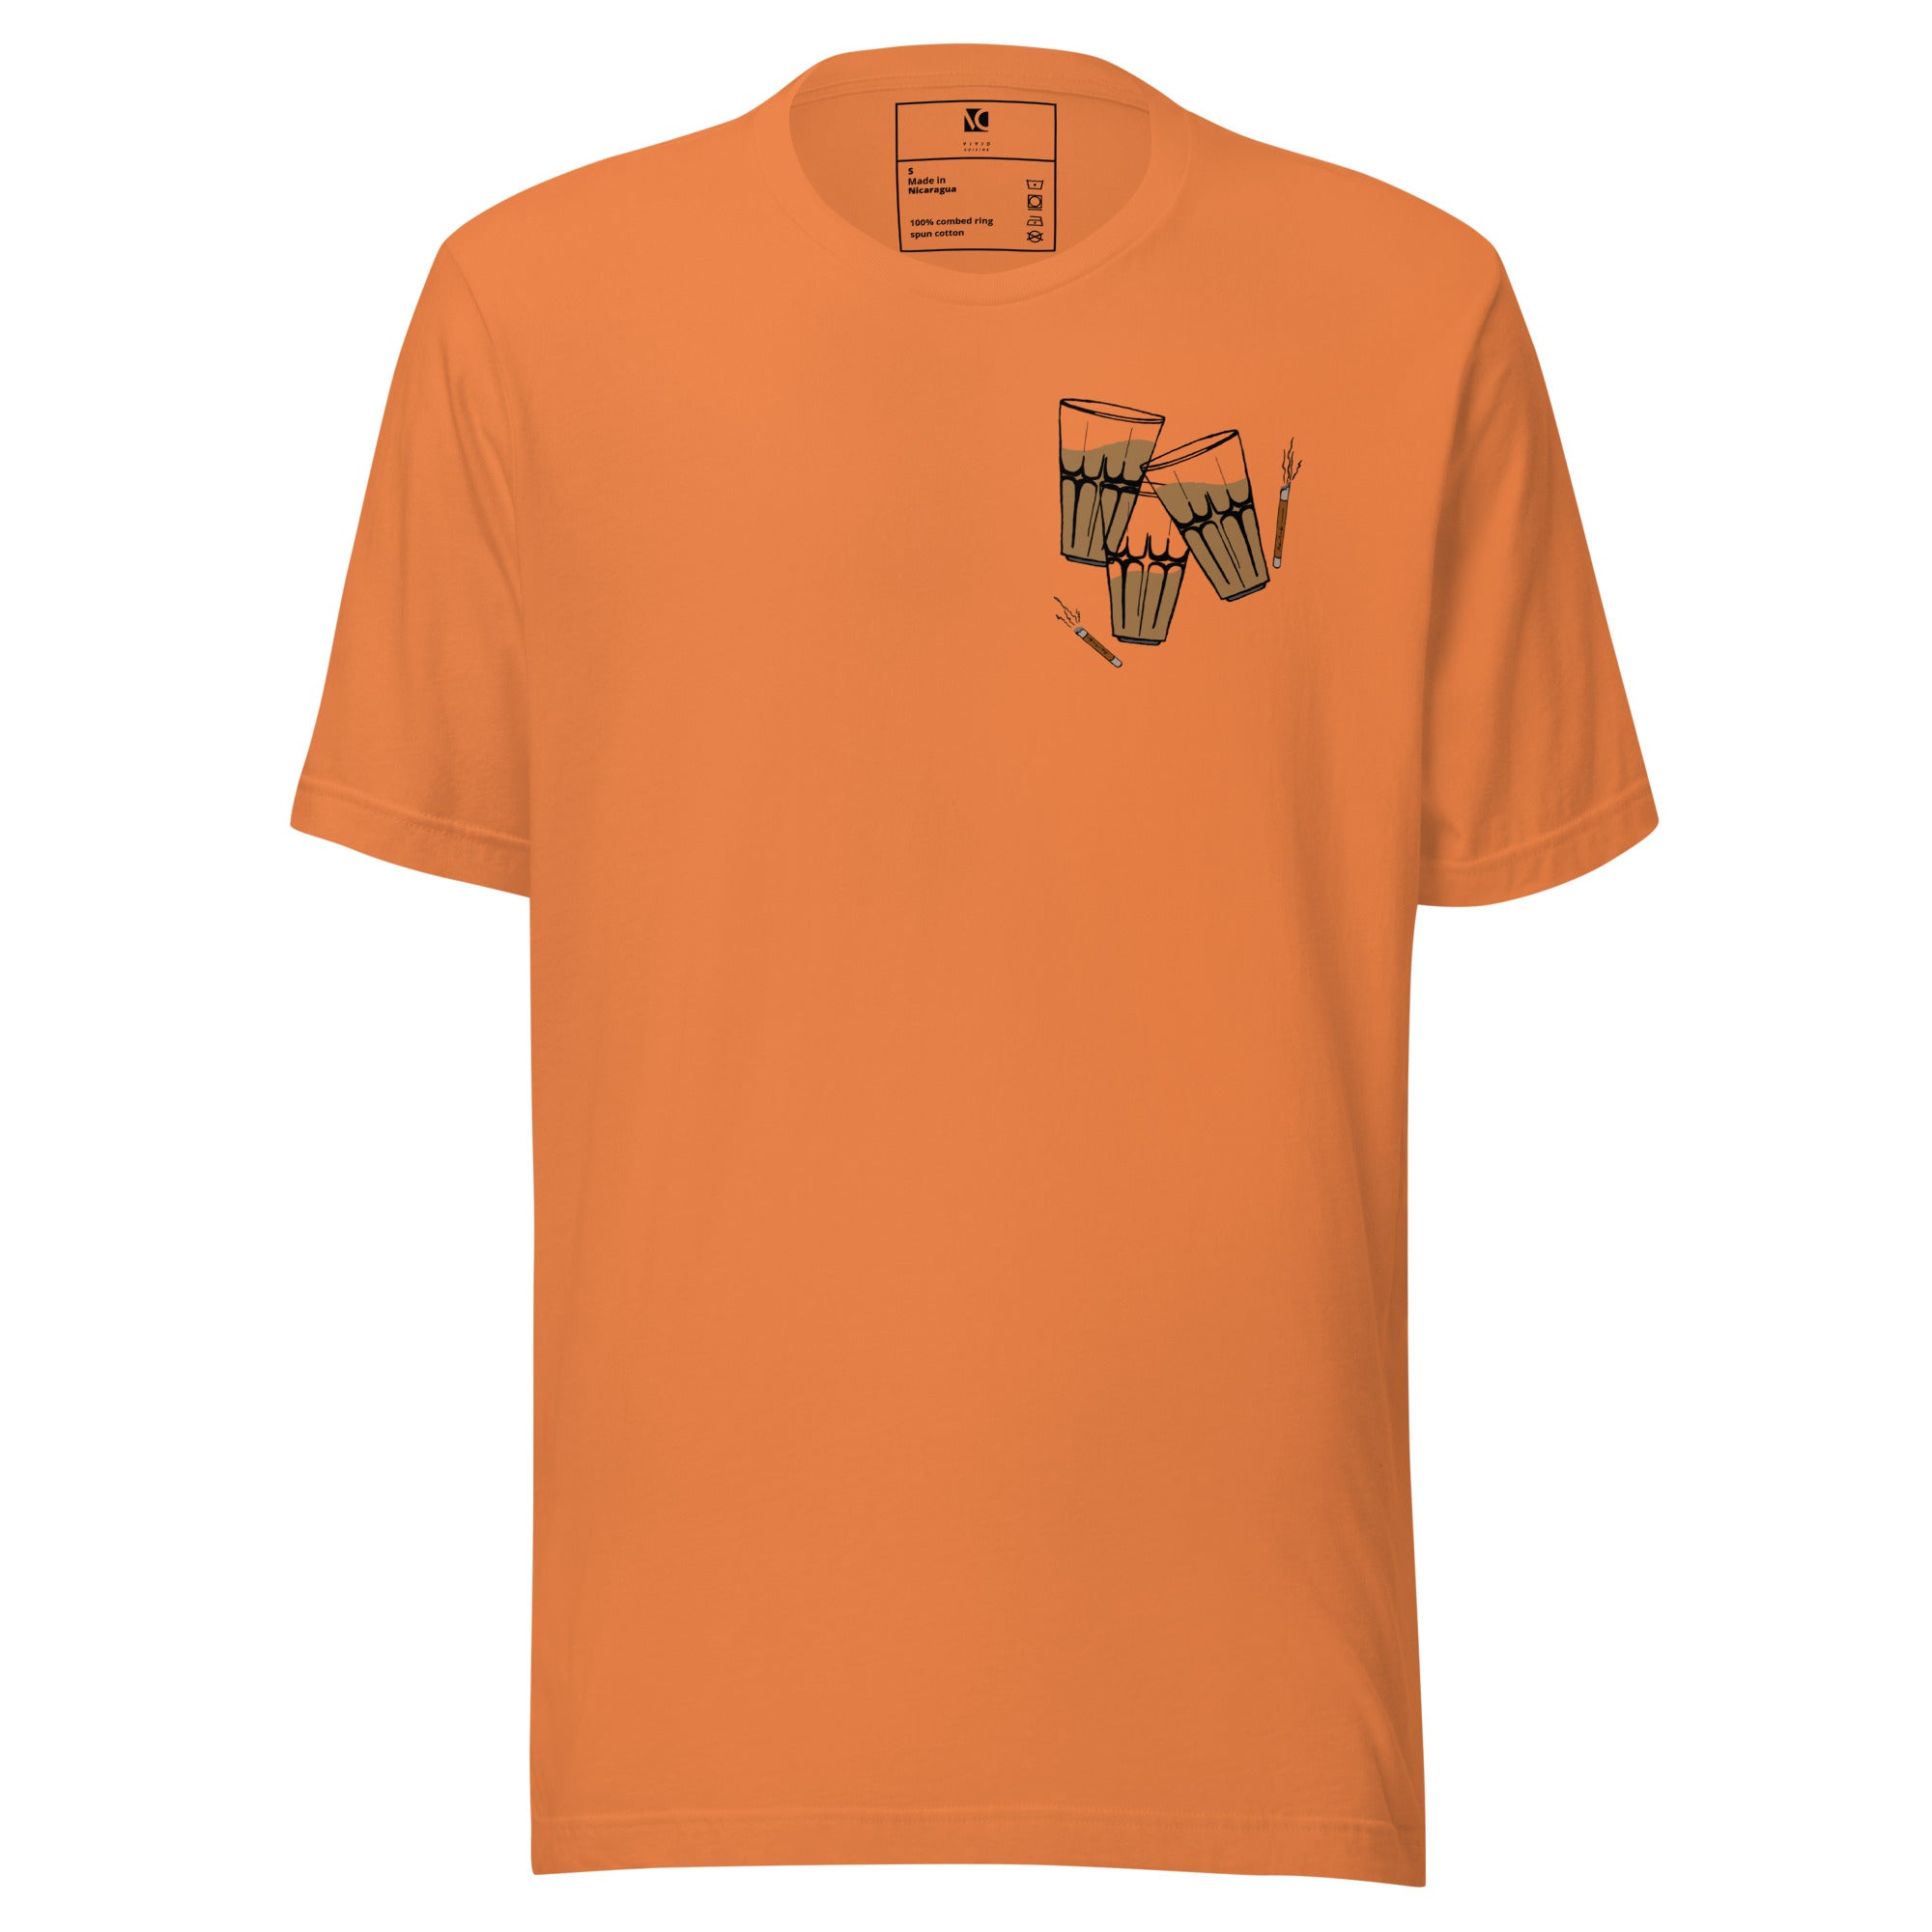 Dost aur Gupshup - Unisex T-Shirt